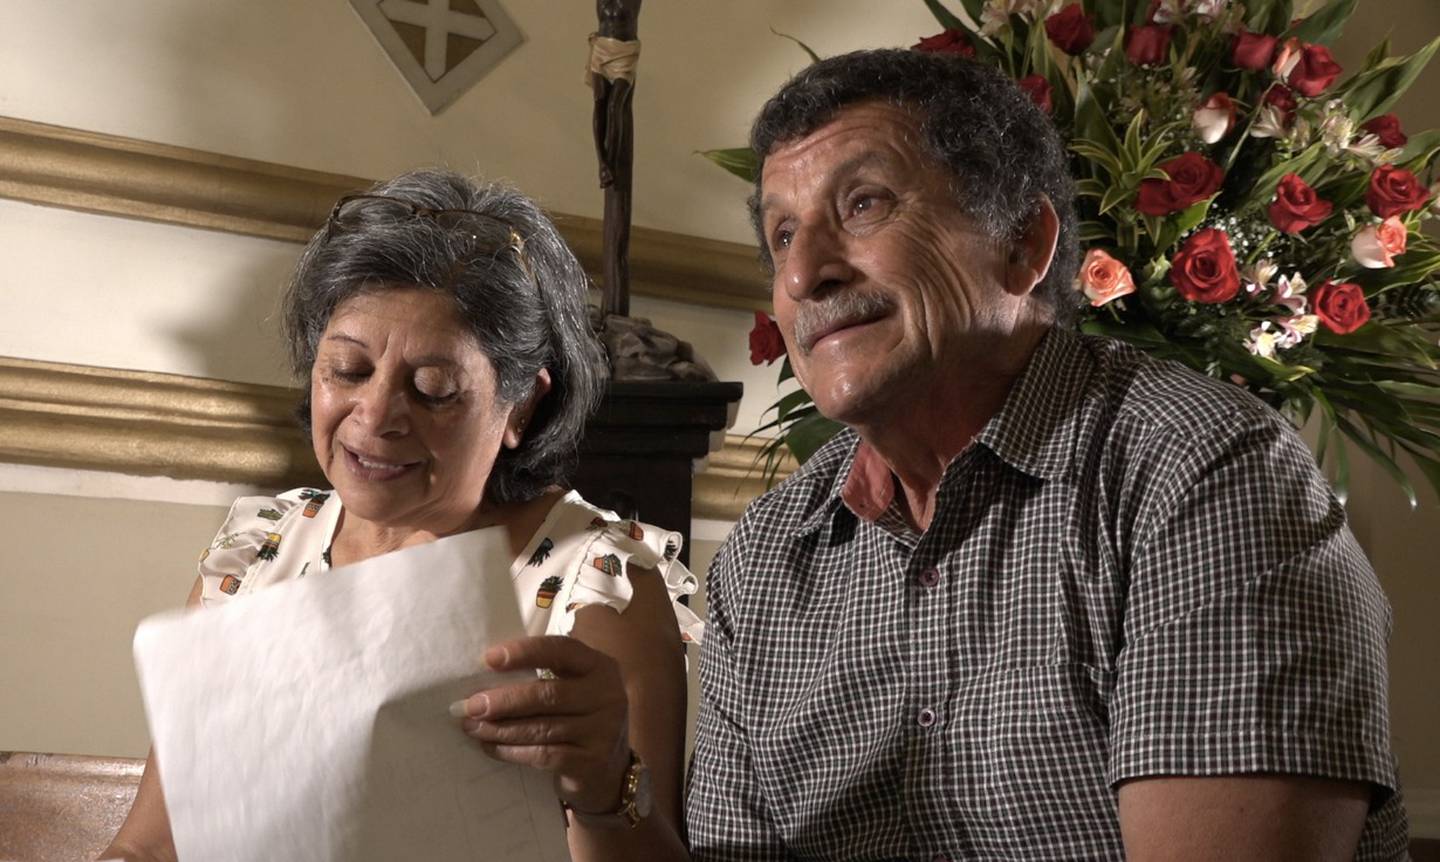 Don Ronald Berrocal tiene 67 años y está casado con doña Rocío Fonseca, quien tienen 63. Tienen 2 hijos y 5 nietos. Son vecinos de Calle Blancos y aseguran que El Negrito de Alajuelita los sanó